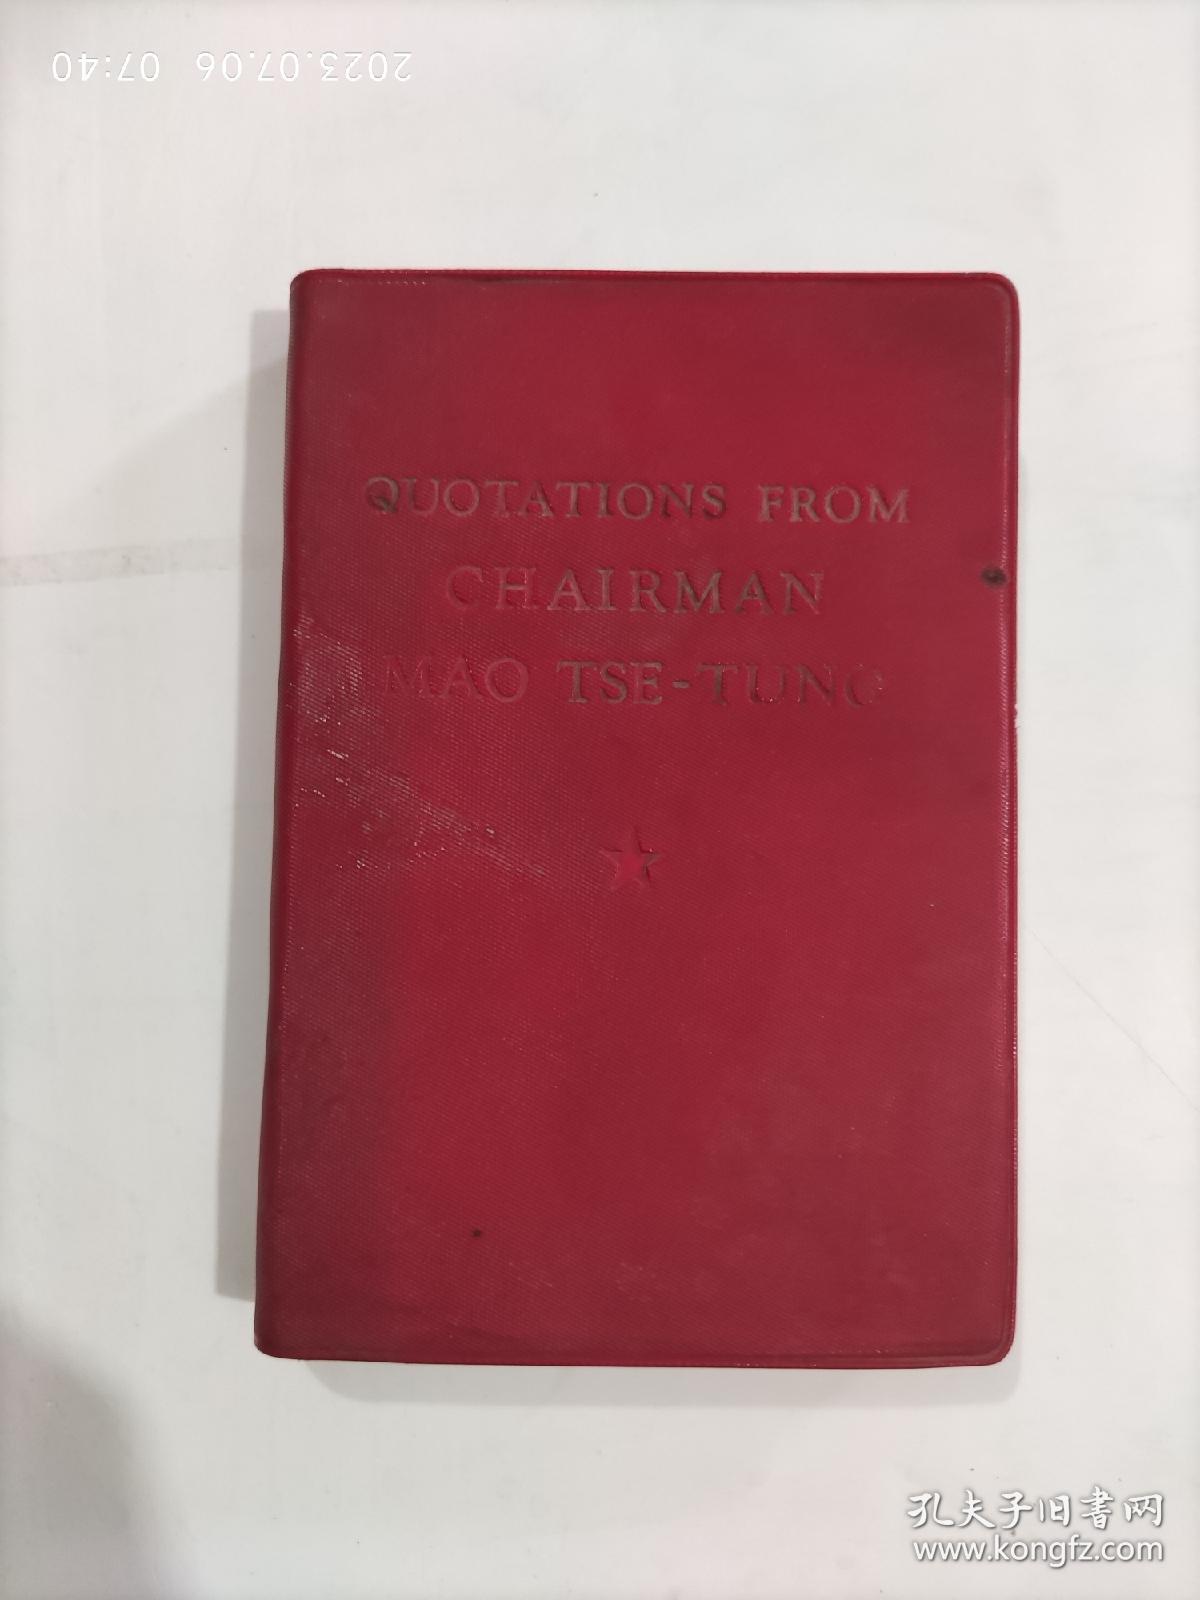 毛主席语录（英文版，编号 1050-491，1967年1月重印，题词被撕）放在左手边书架上至下第八层靠左第一包2023.7.5整理